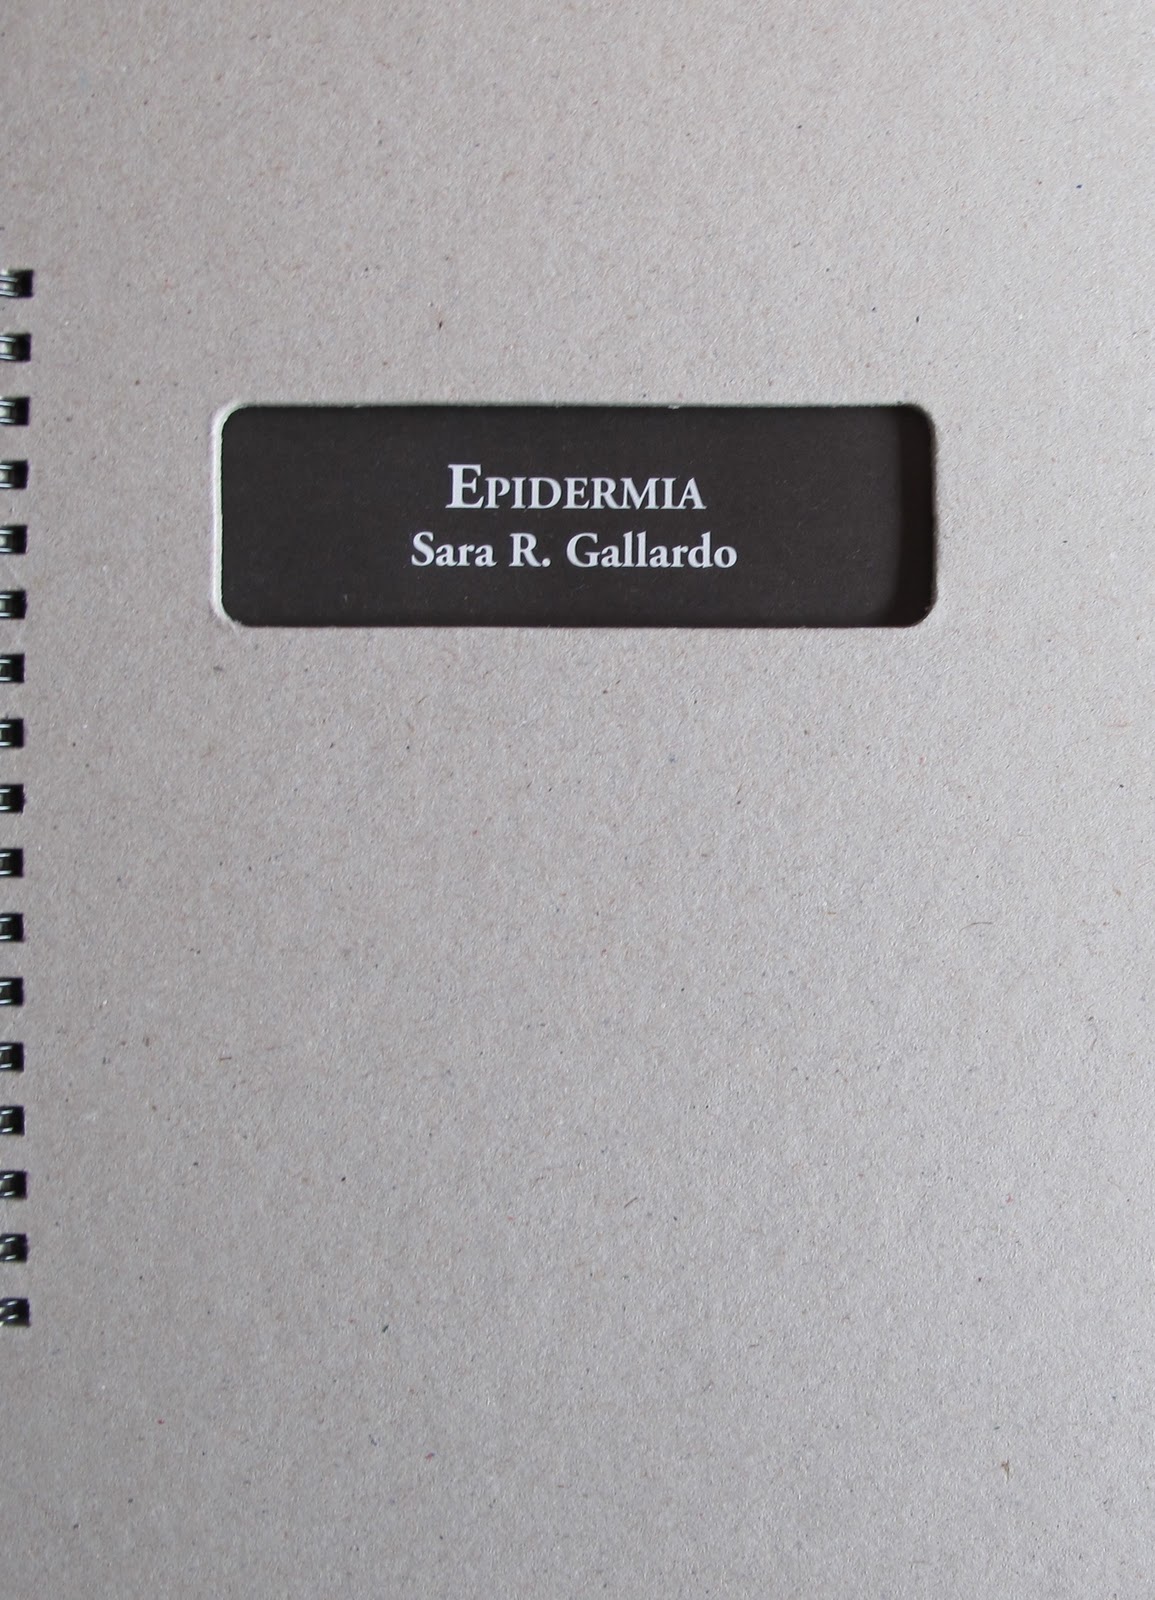 Epidermia (El Gaviero, 2011)